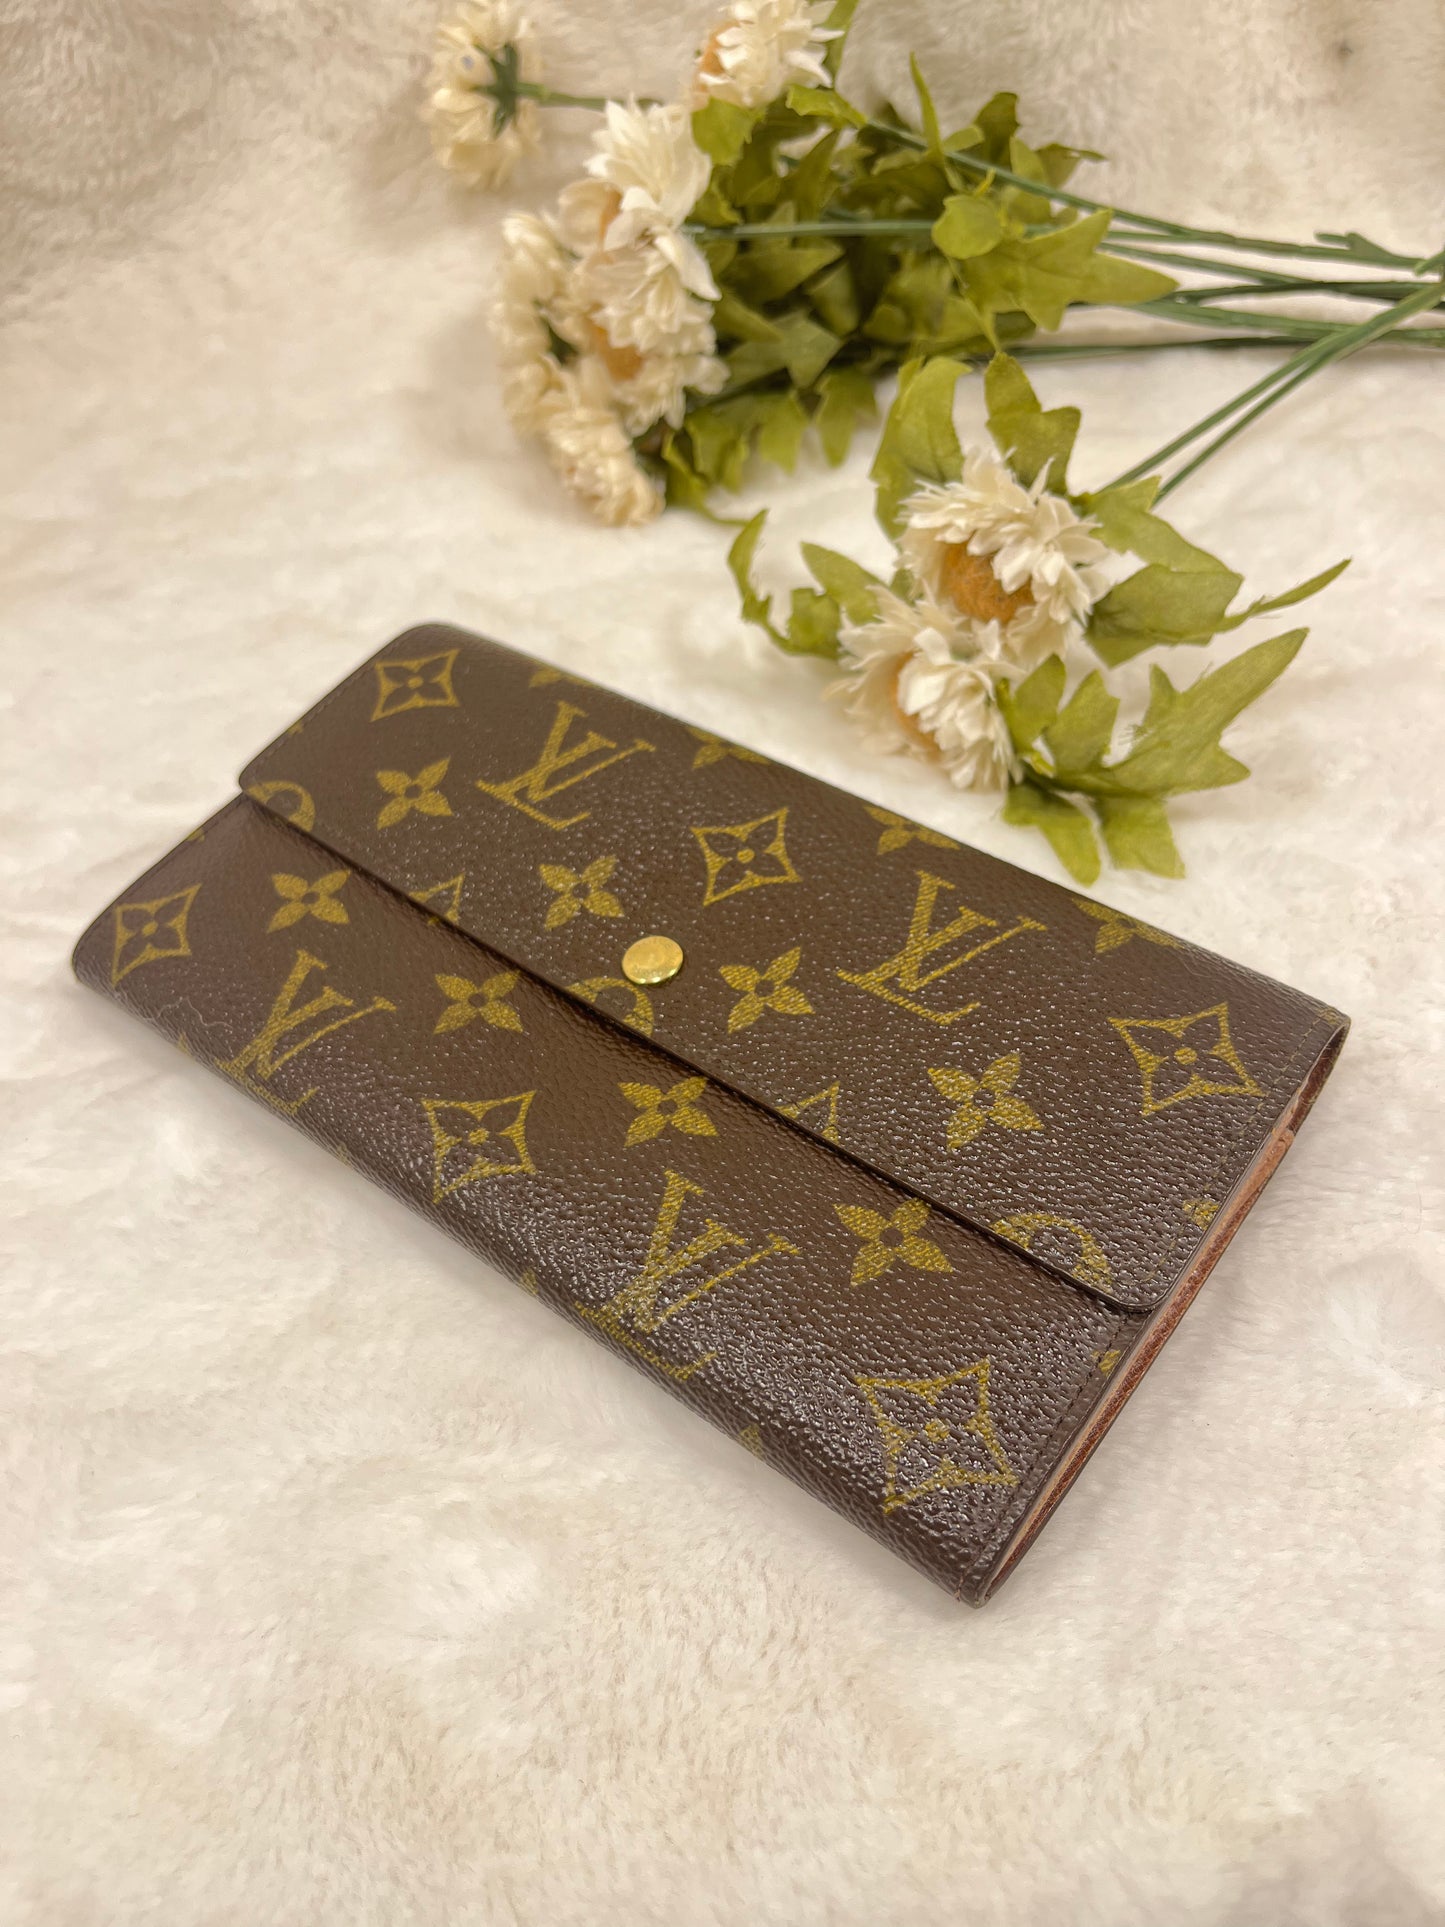 Authentic pre-owned Louis Vuitton Sarah wallet